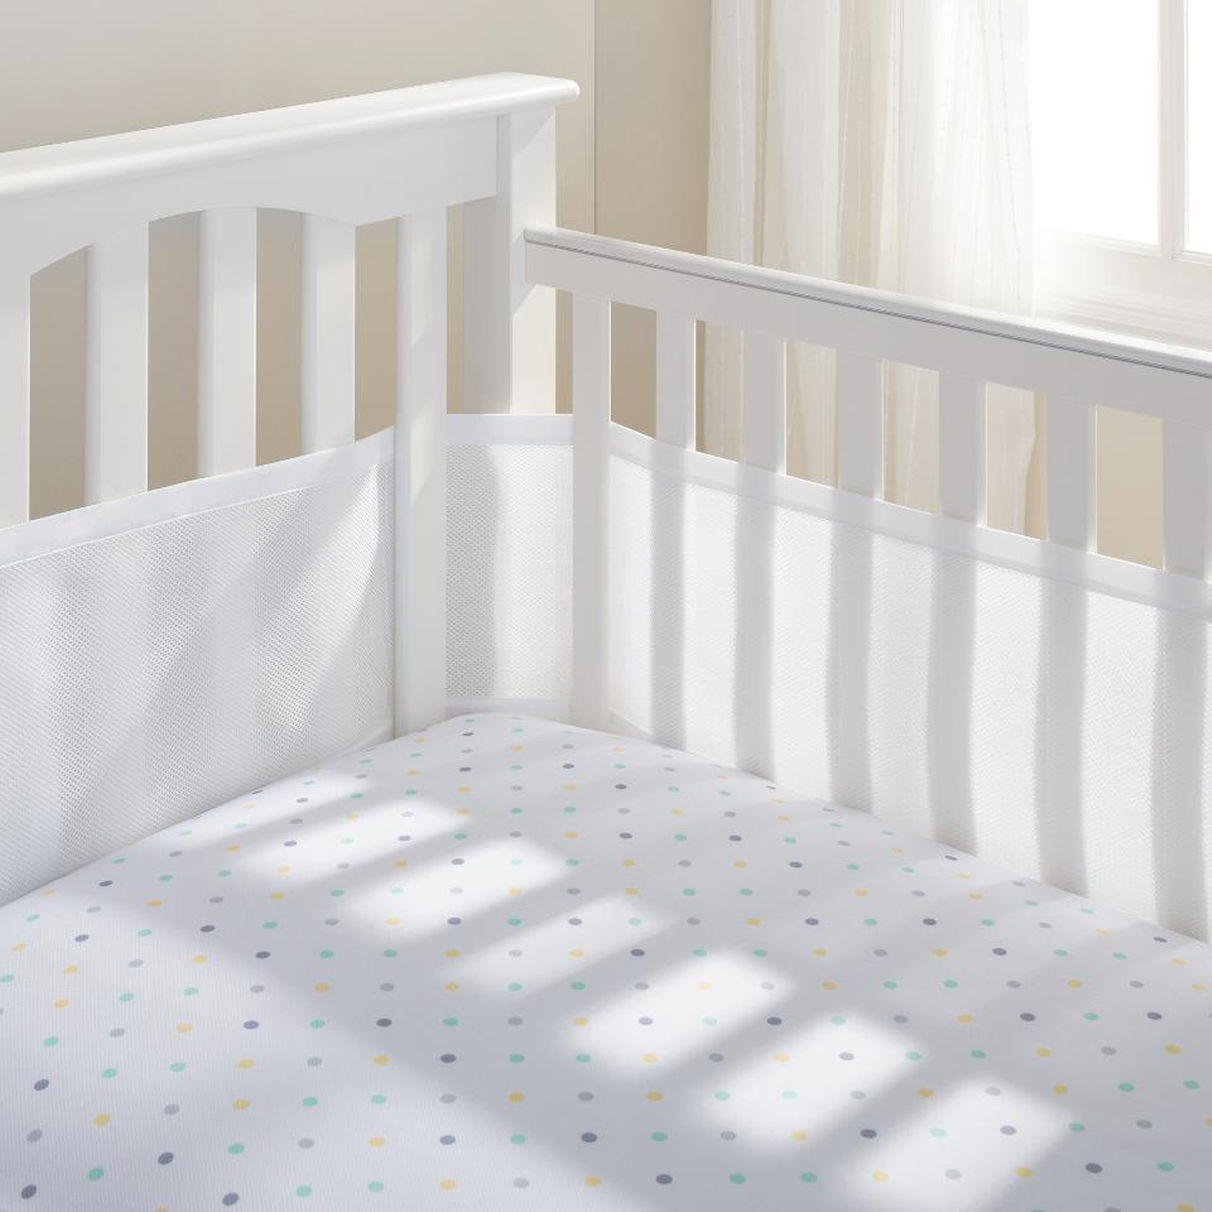 the loop-de-loo™ brand baby crib bumper NLQQZHI